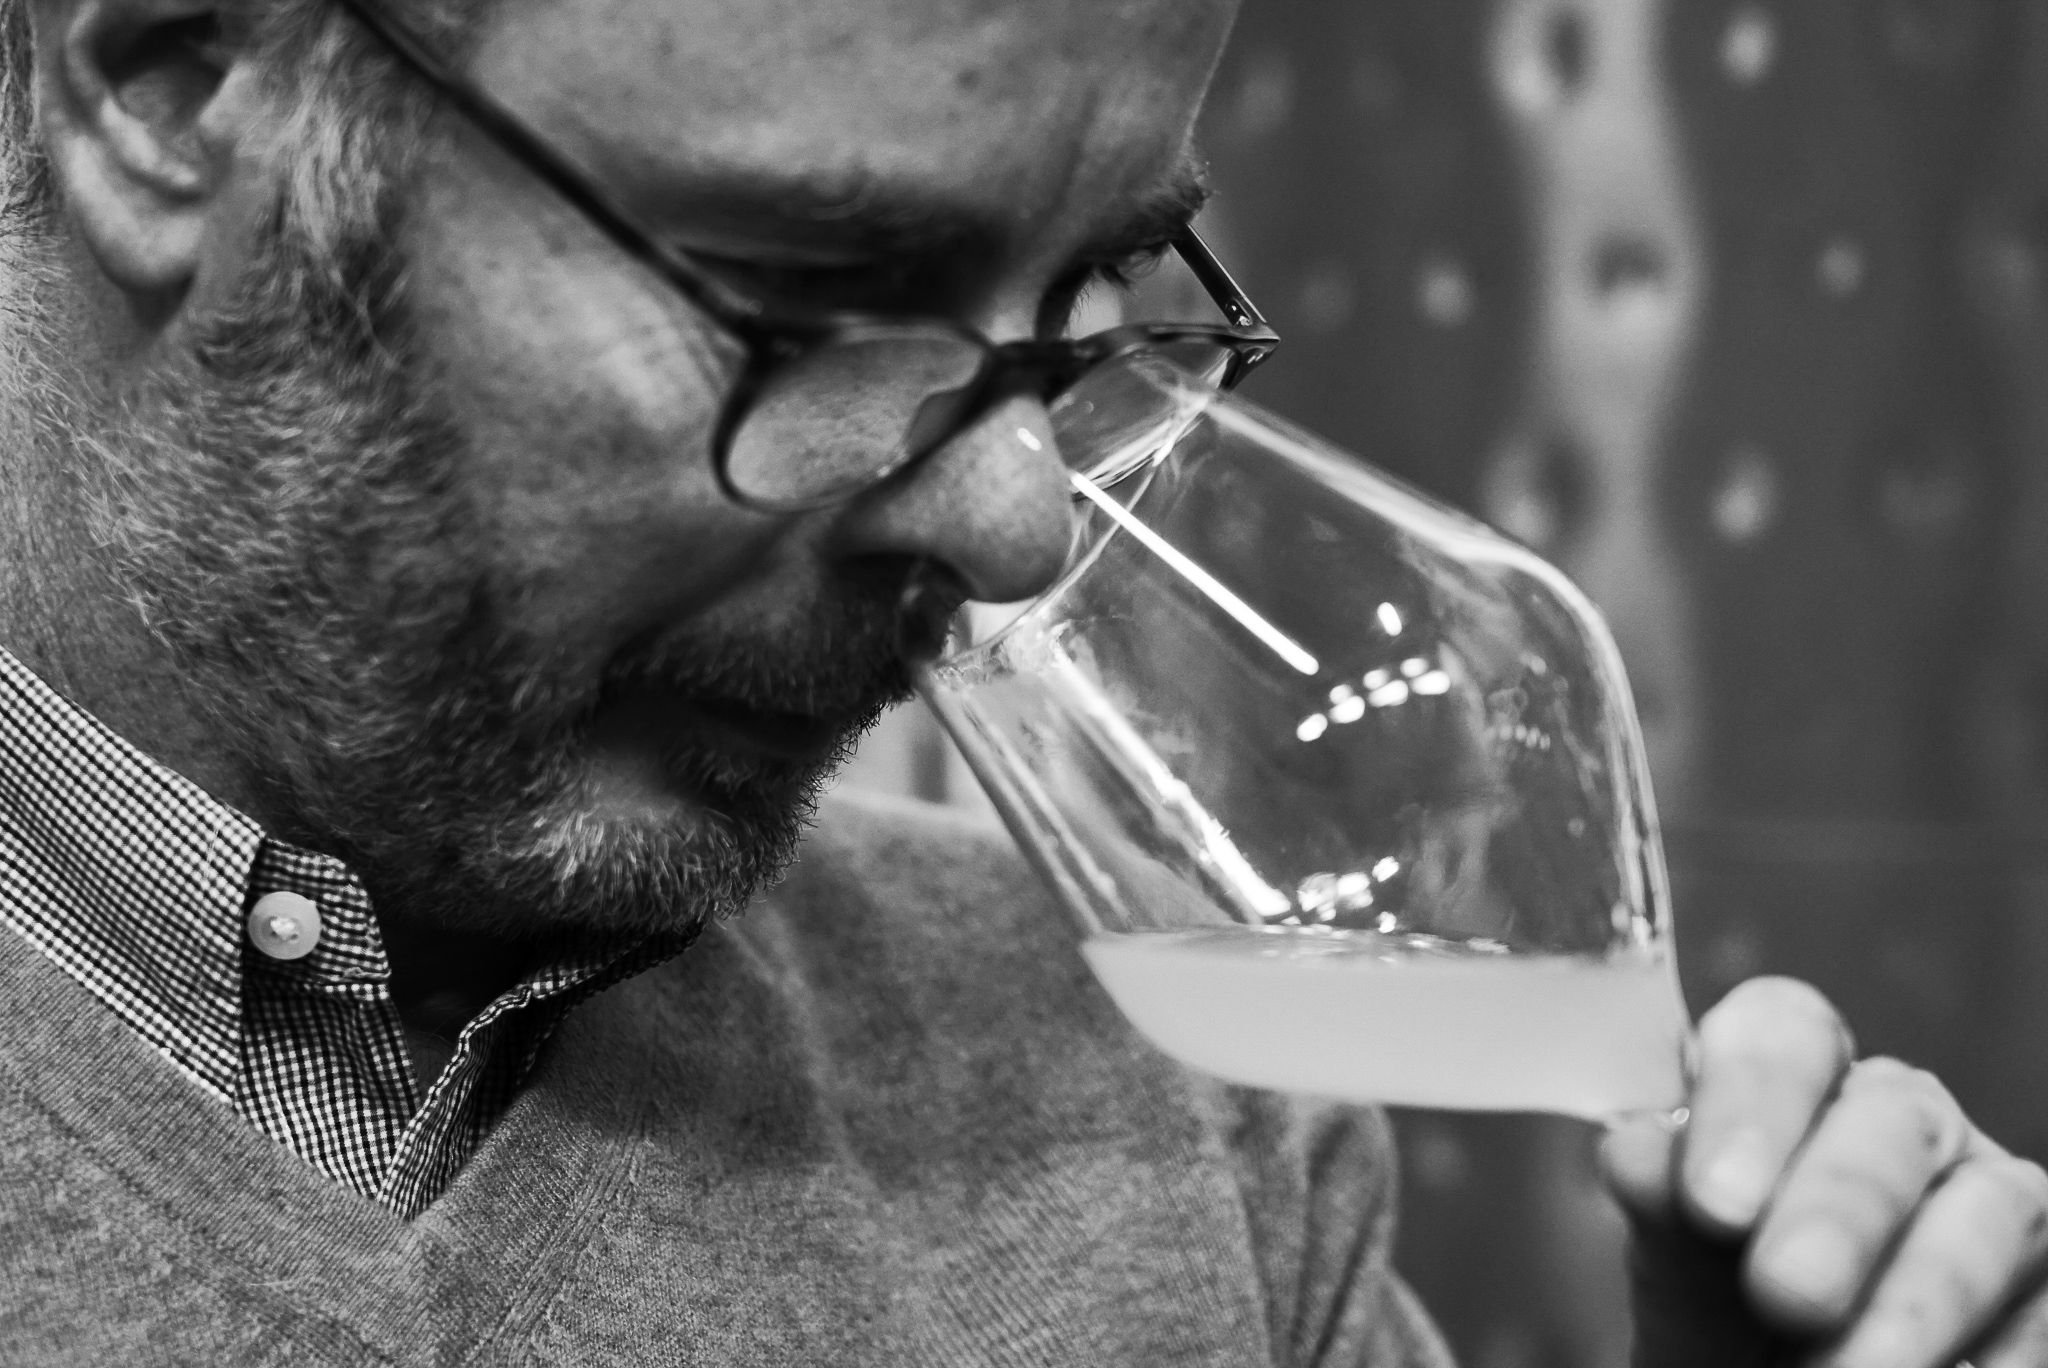 De eerste urban winery van België lanceert Gudule, een biologische wijn in hartje Brussel